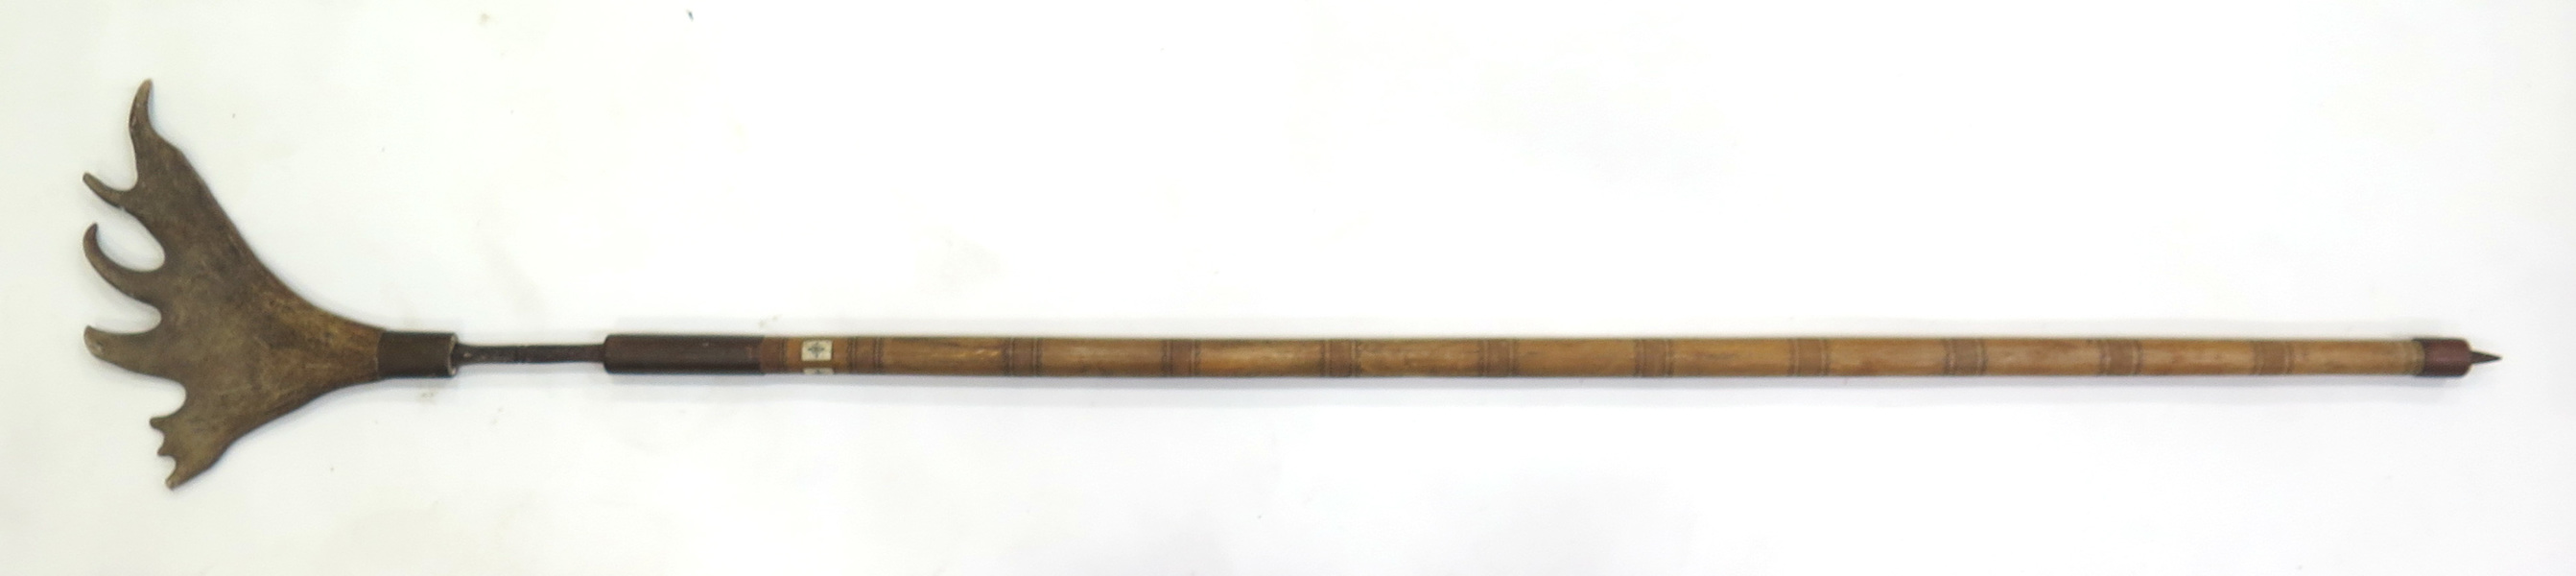 Björnspjut, trä, smide och renhorn, 1900-talets mitt, _6089a_8d8c2c61d1abaaf_lg.jpeg